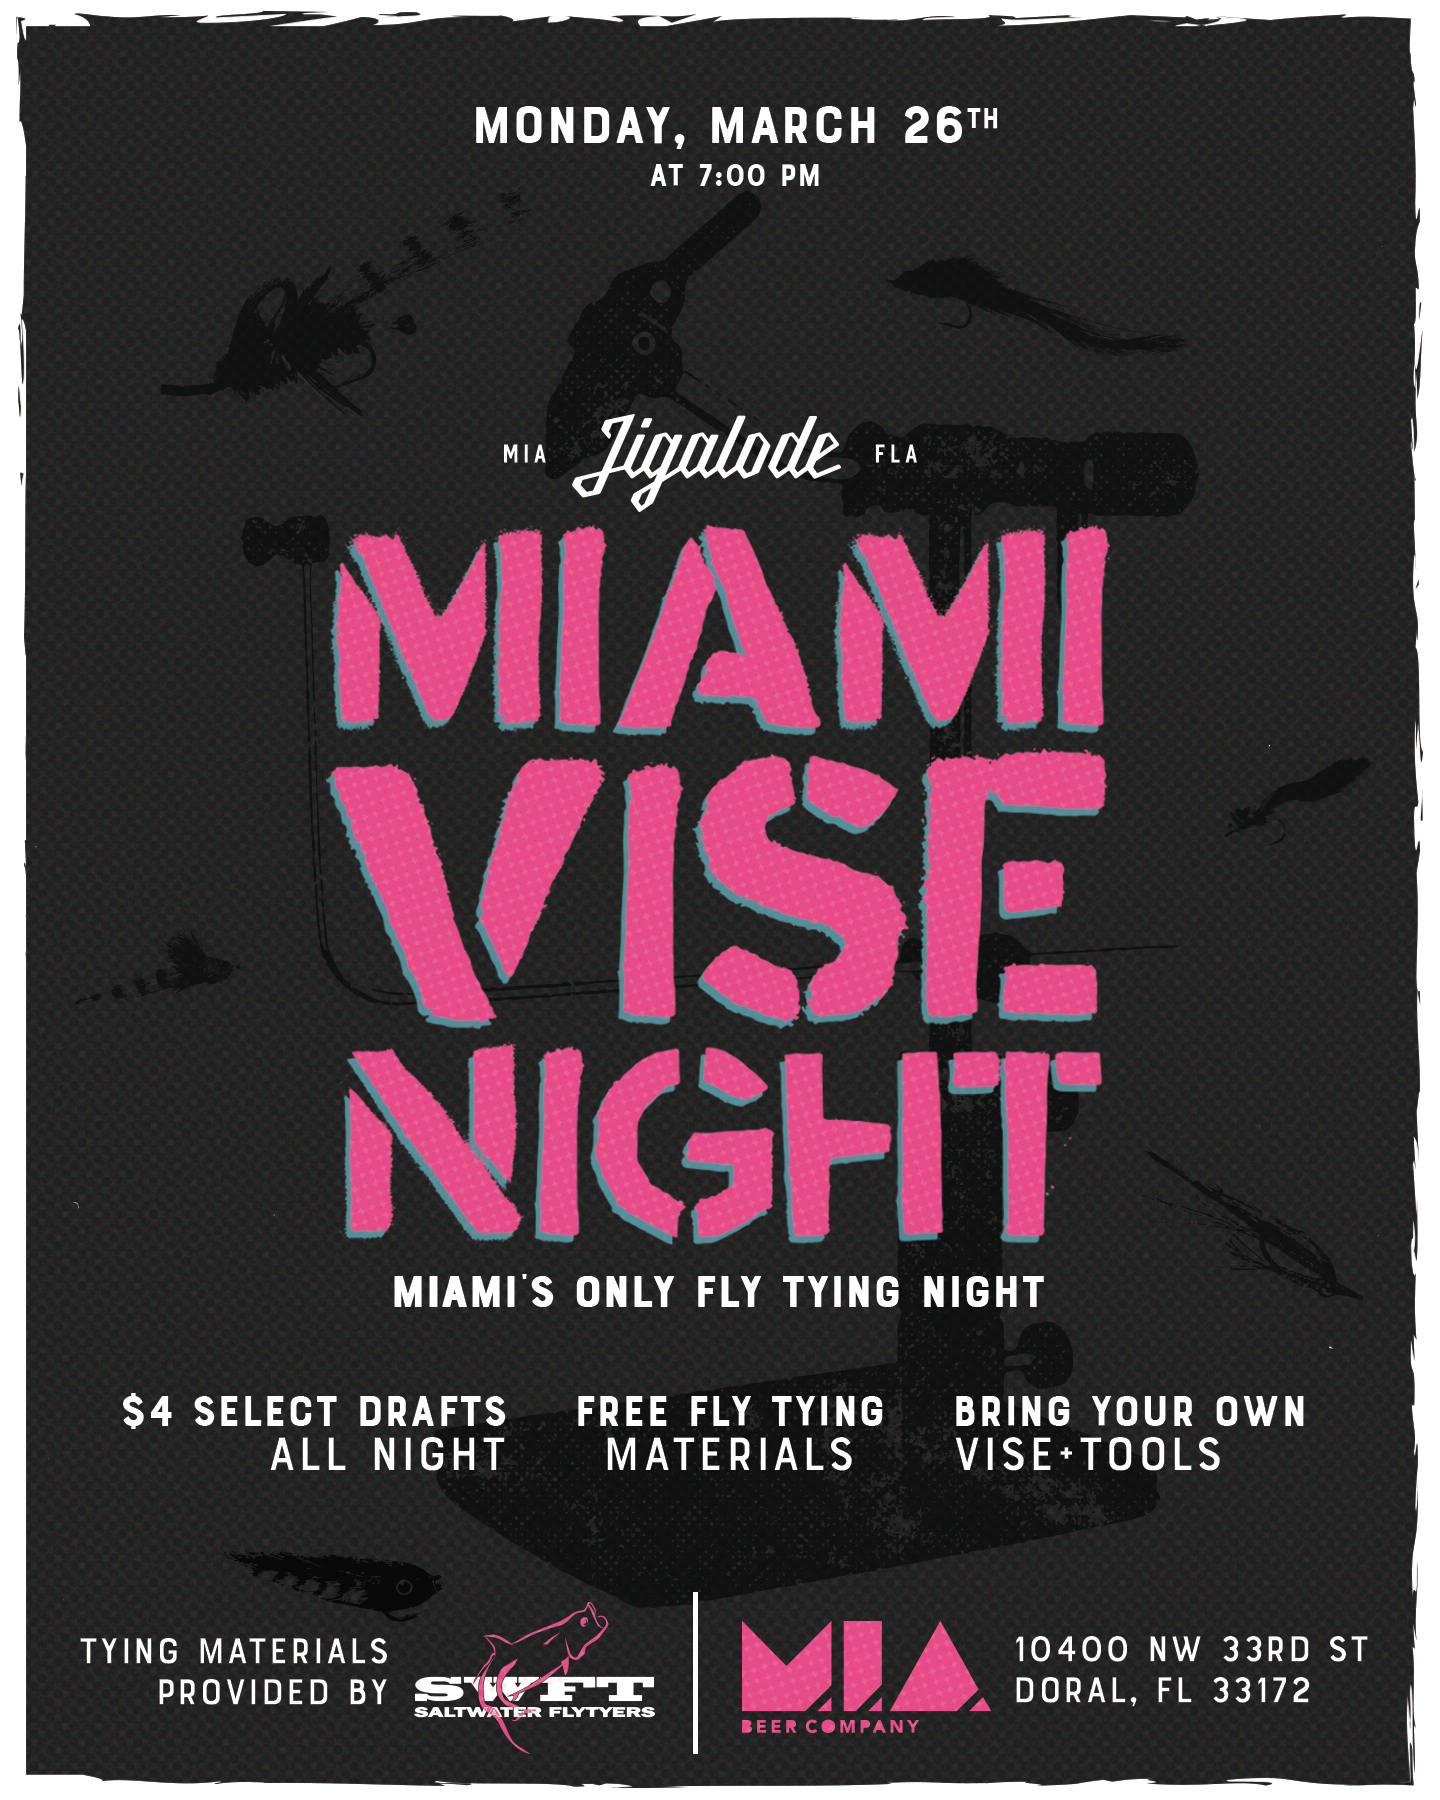 Miami Vise Night: March